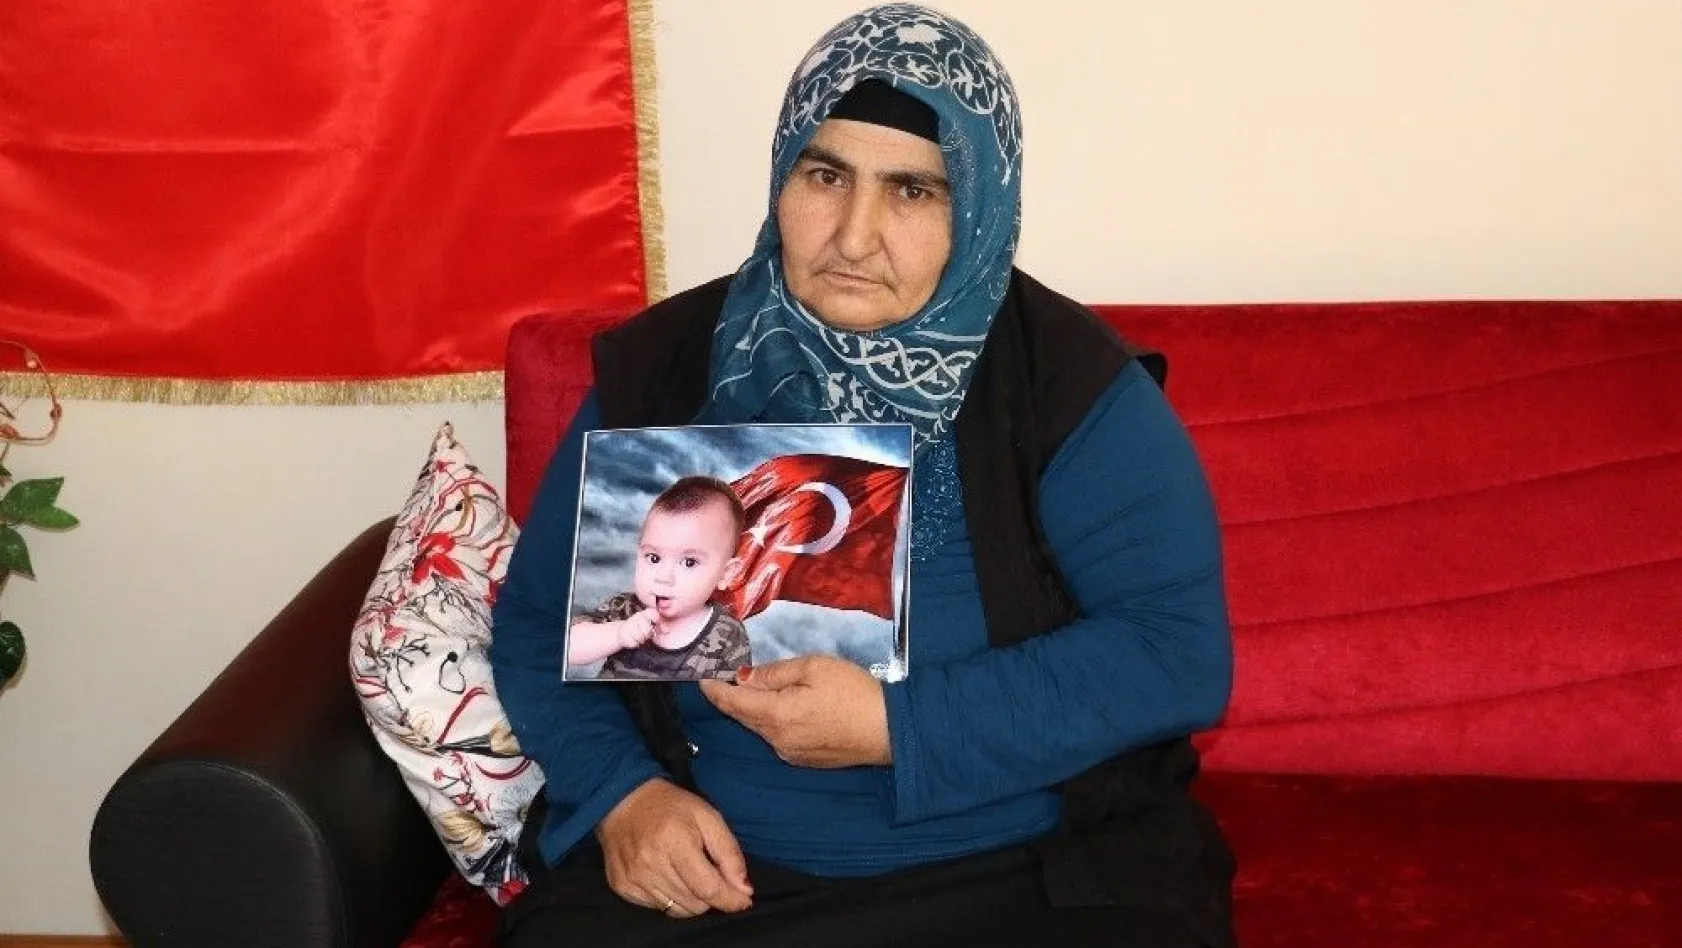 Şehit Bedirhan'ın anneannesi: 'Bedirhan'ın intikamını aldılar çok sevindim'
